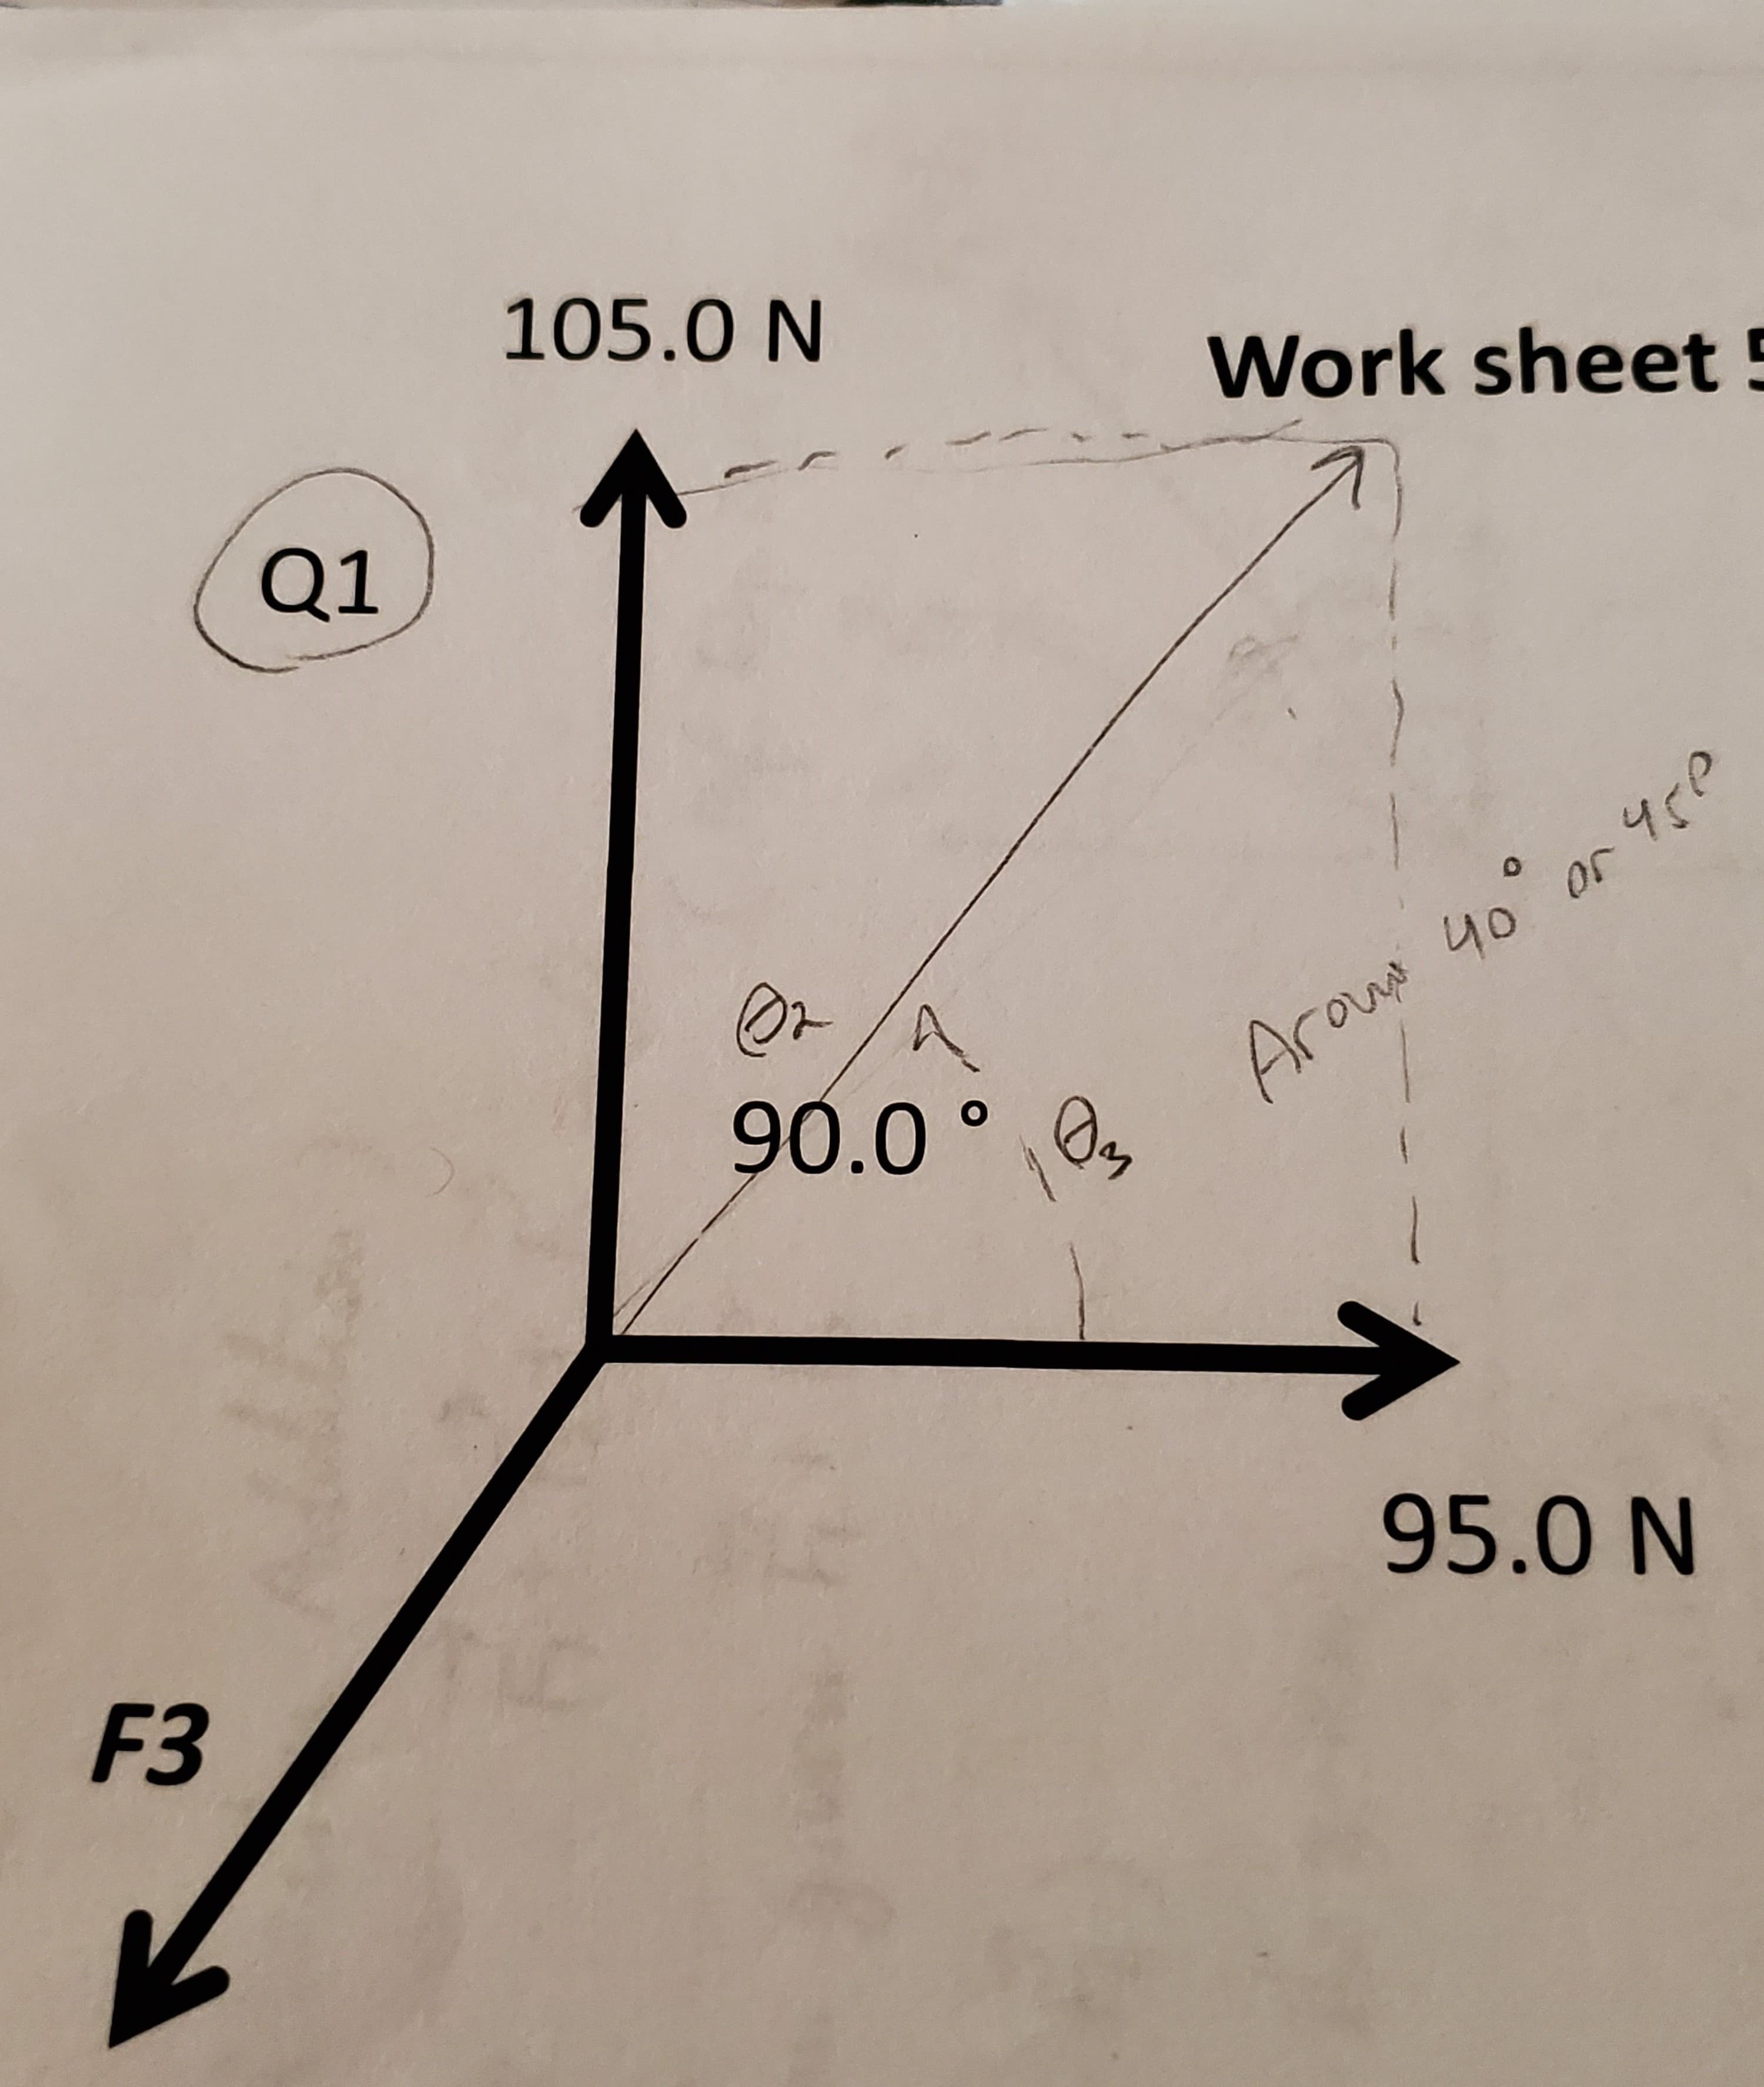 105.0 N
Work sheet 5
Q1
Or/A
90.0° 0
Arou 40 or 4rP
95.0 N
F3
